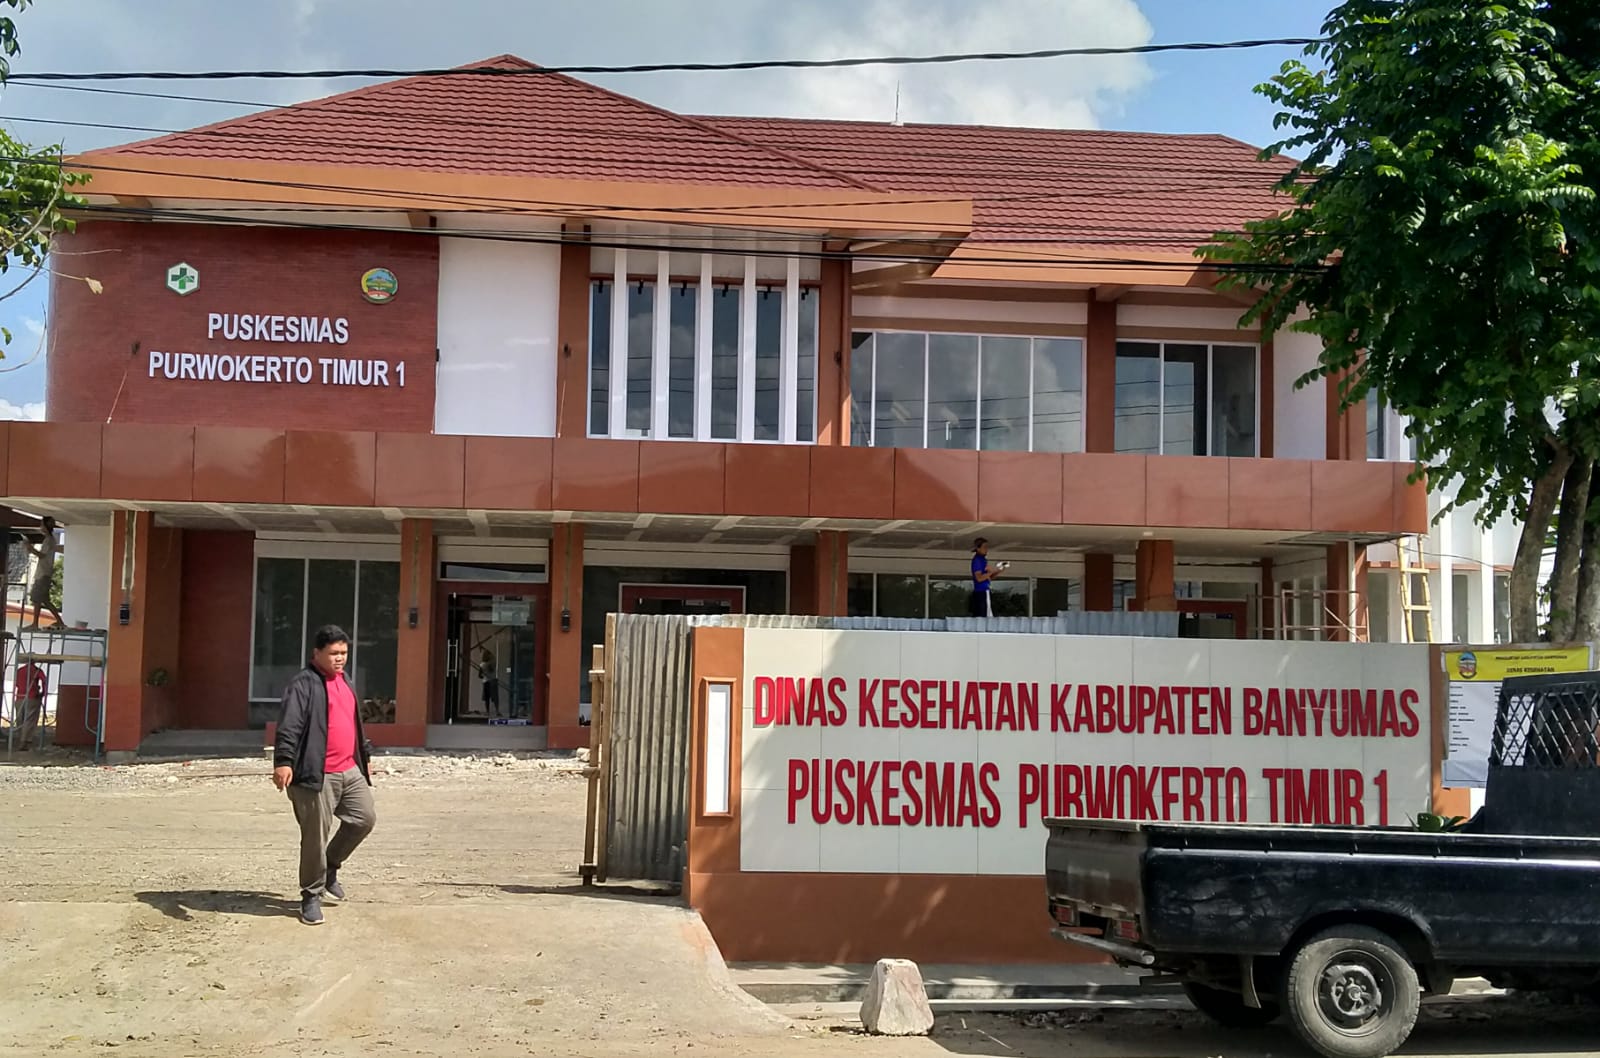 Pembangunan Gedung Baru Puskesmas Purwokerto Timur 1 Masuk Finishing